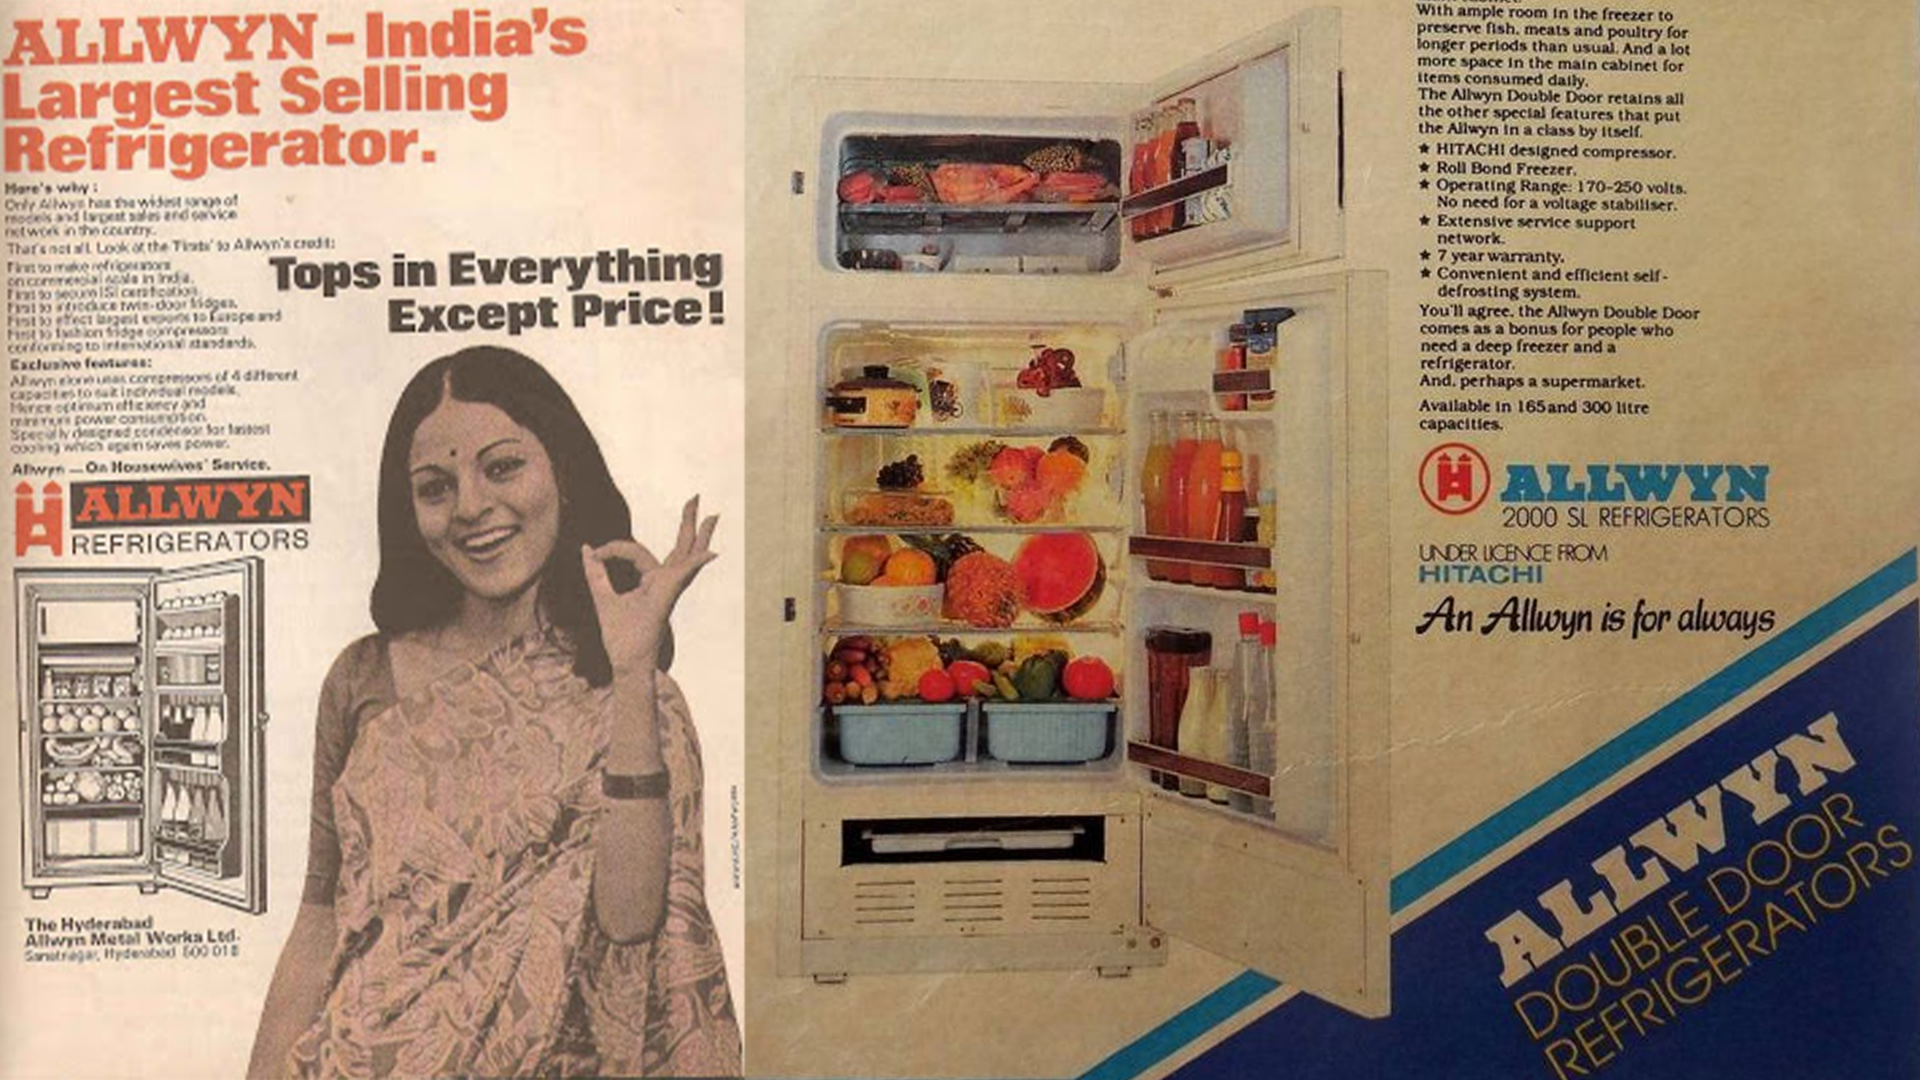 Allwyn Refrigerator advertisement